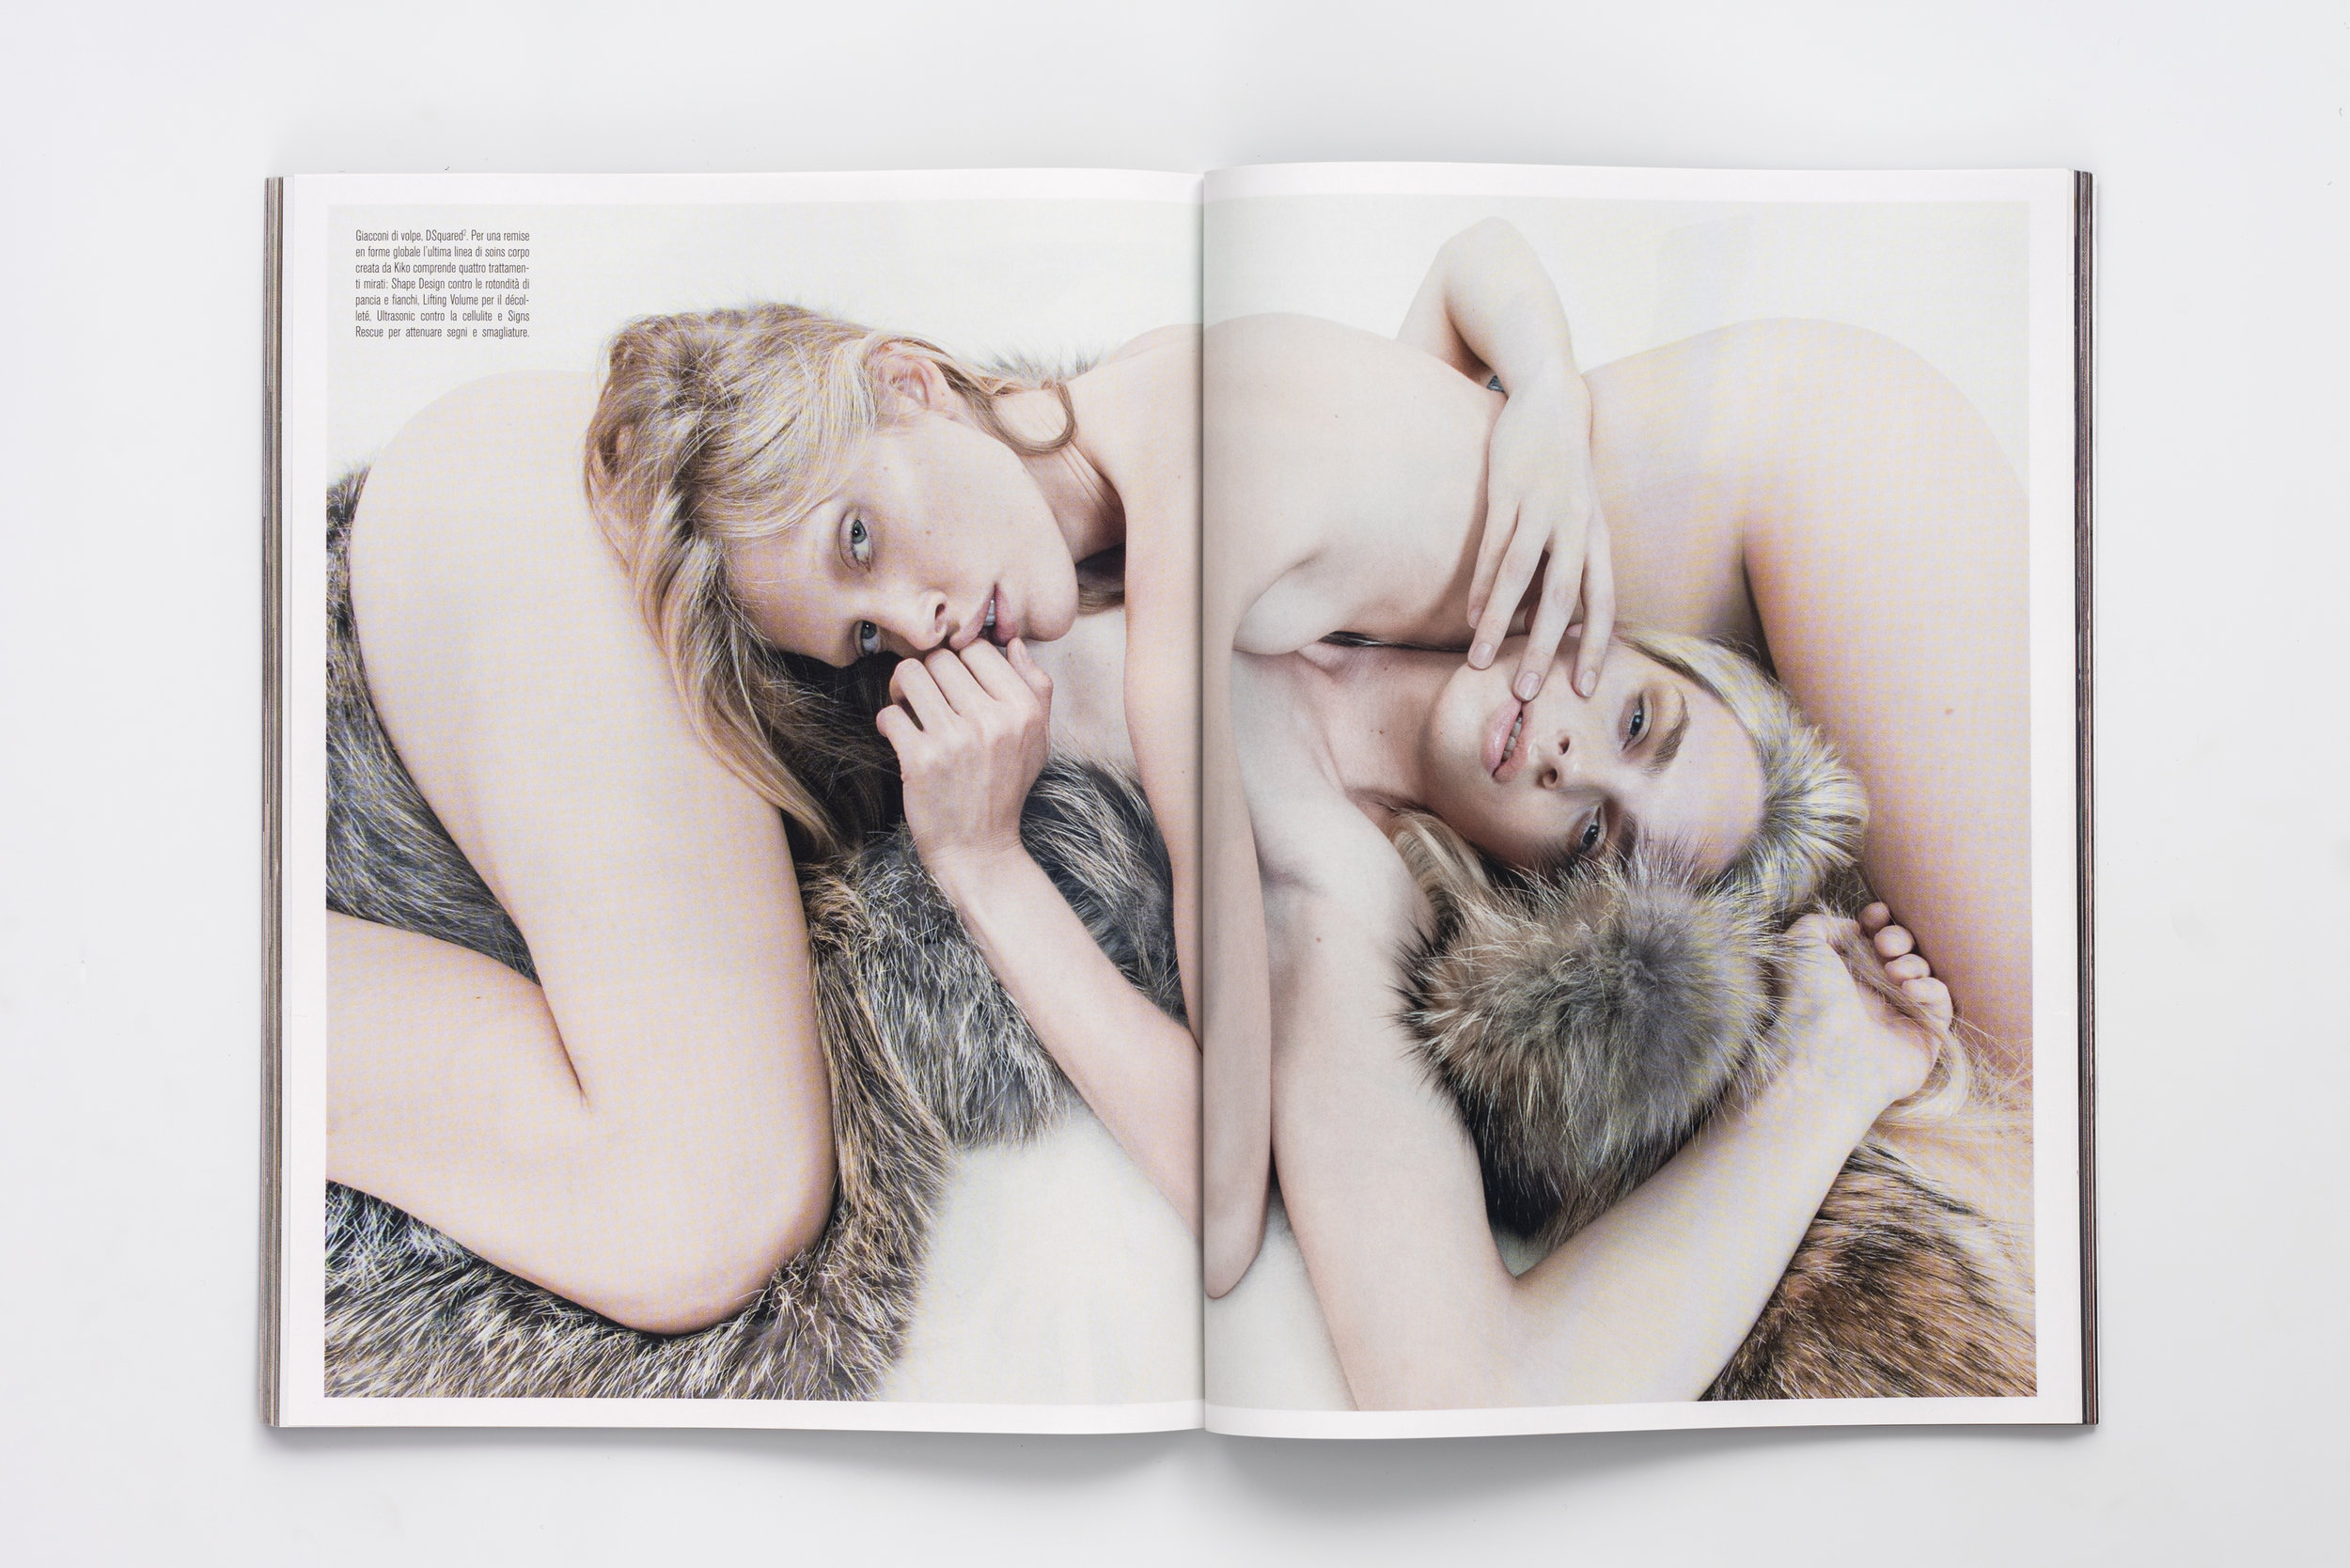 Iselin Steiro_Steven Meisel_Vogue Italia_Venus in Furs_2.jpg